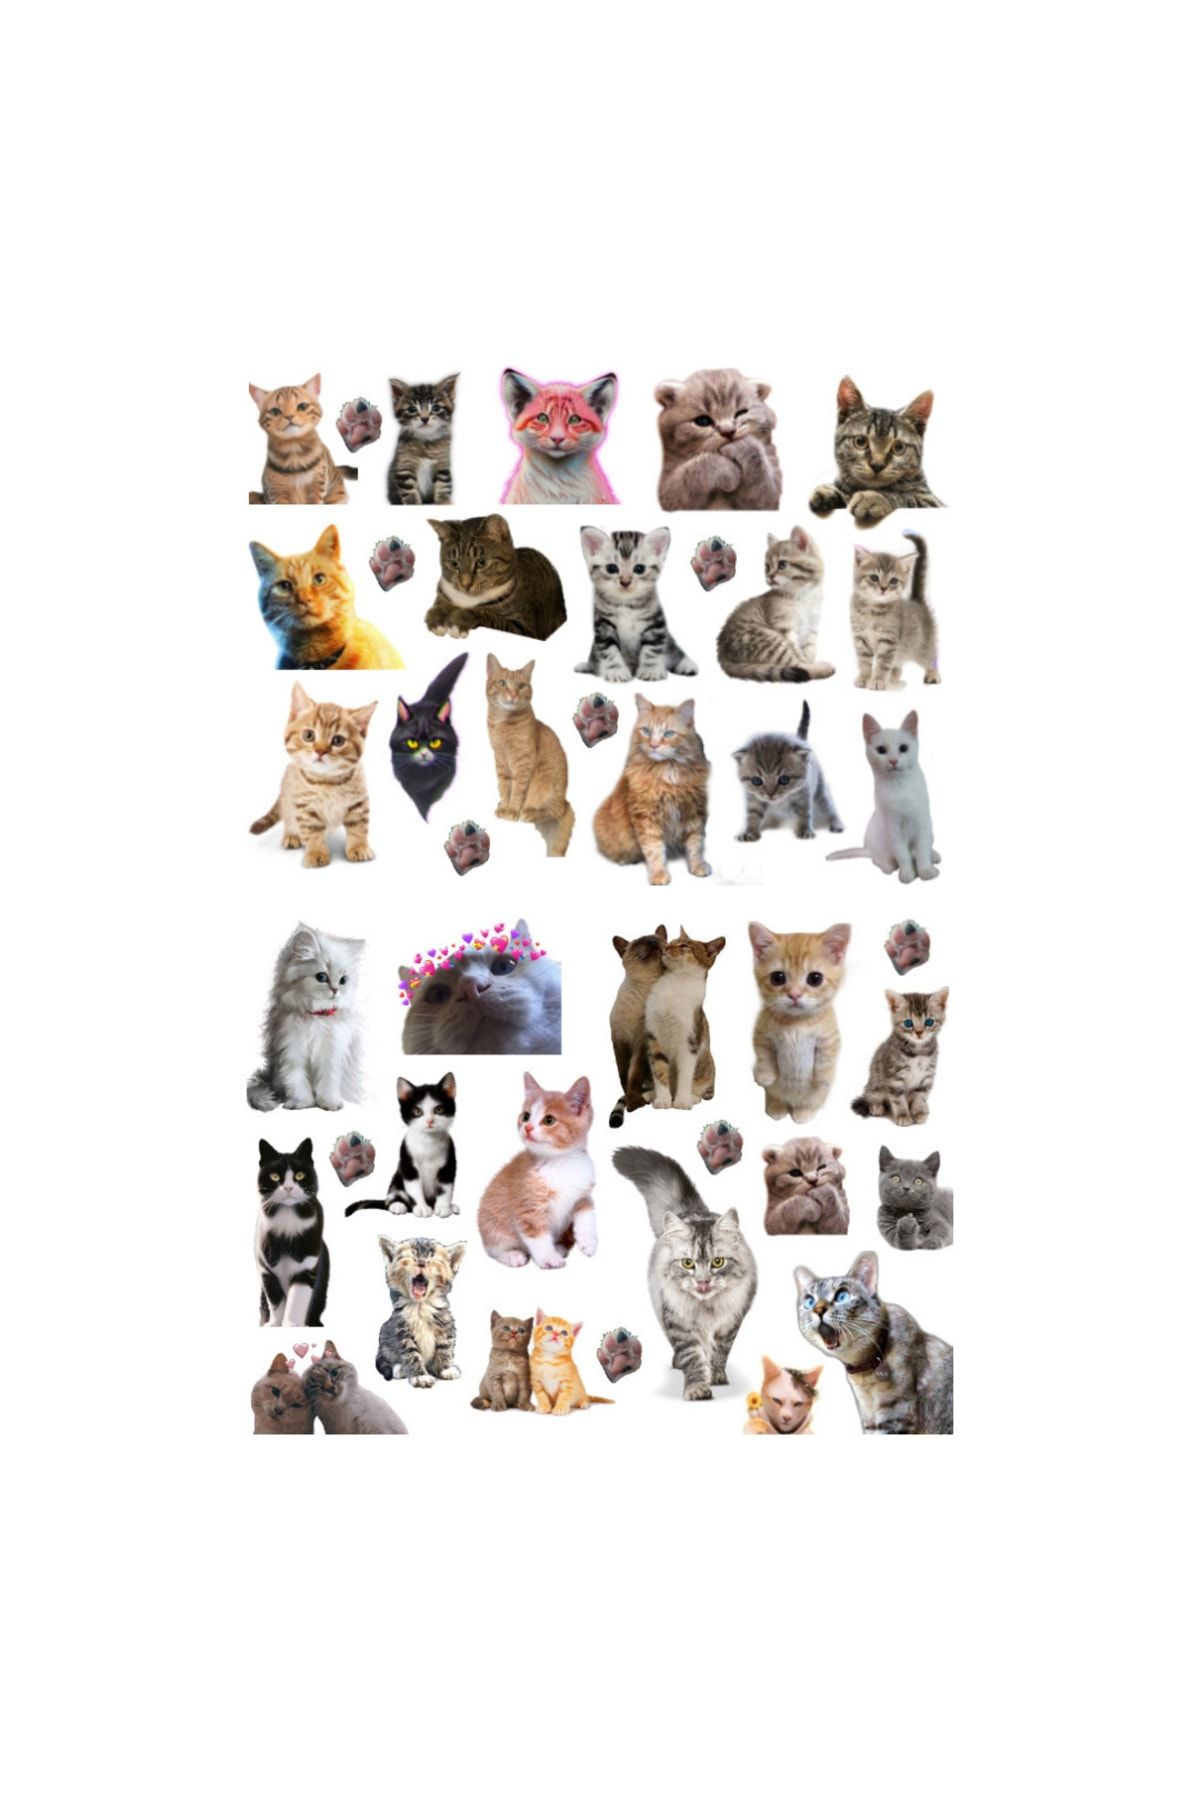 Ororabutik 41'li Kedi, Kitty, Fairycore, Sevimli Hayvanlar Sticker Etiket Seti